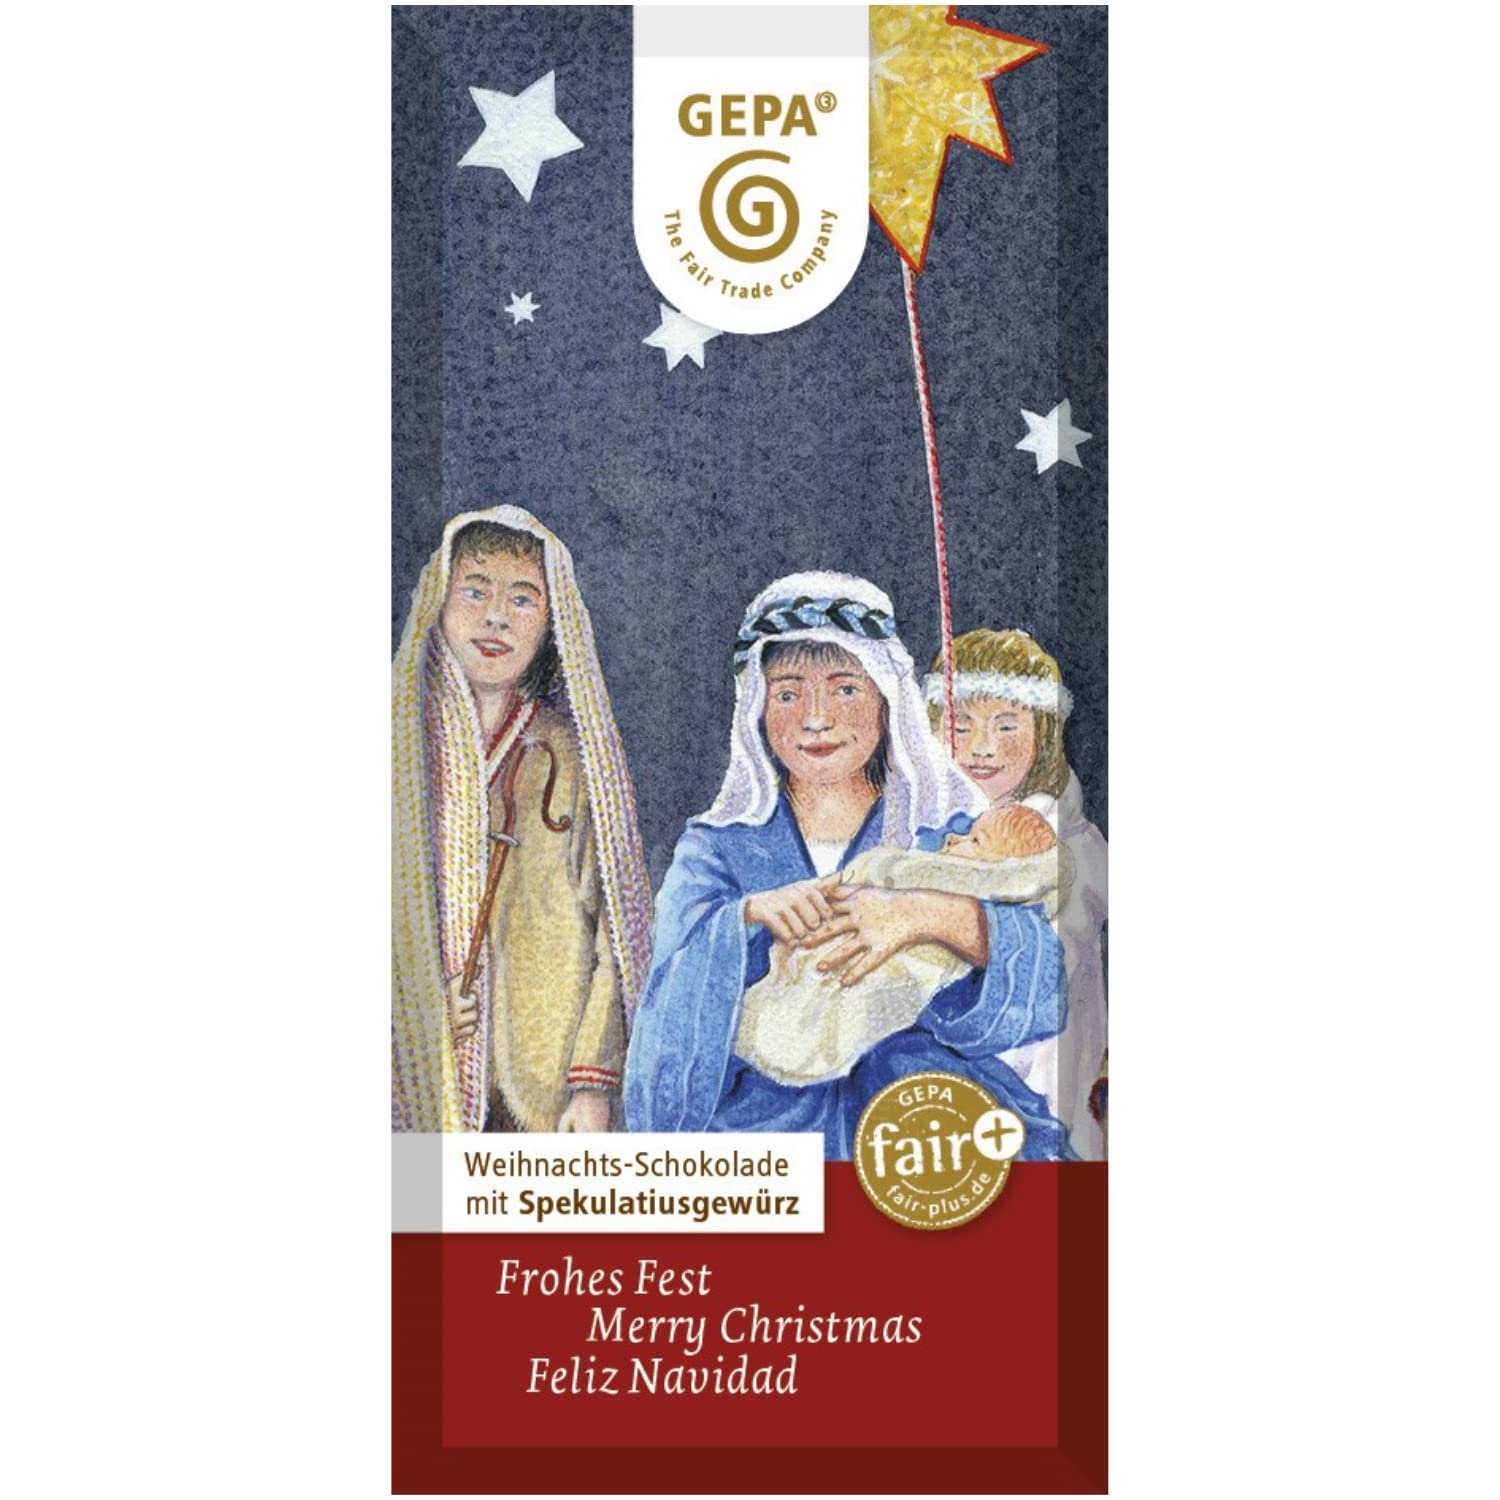 nachhaltige weihnachtssuessigkeiten: Gepa Weihnachtsschokolade